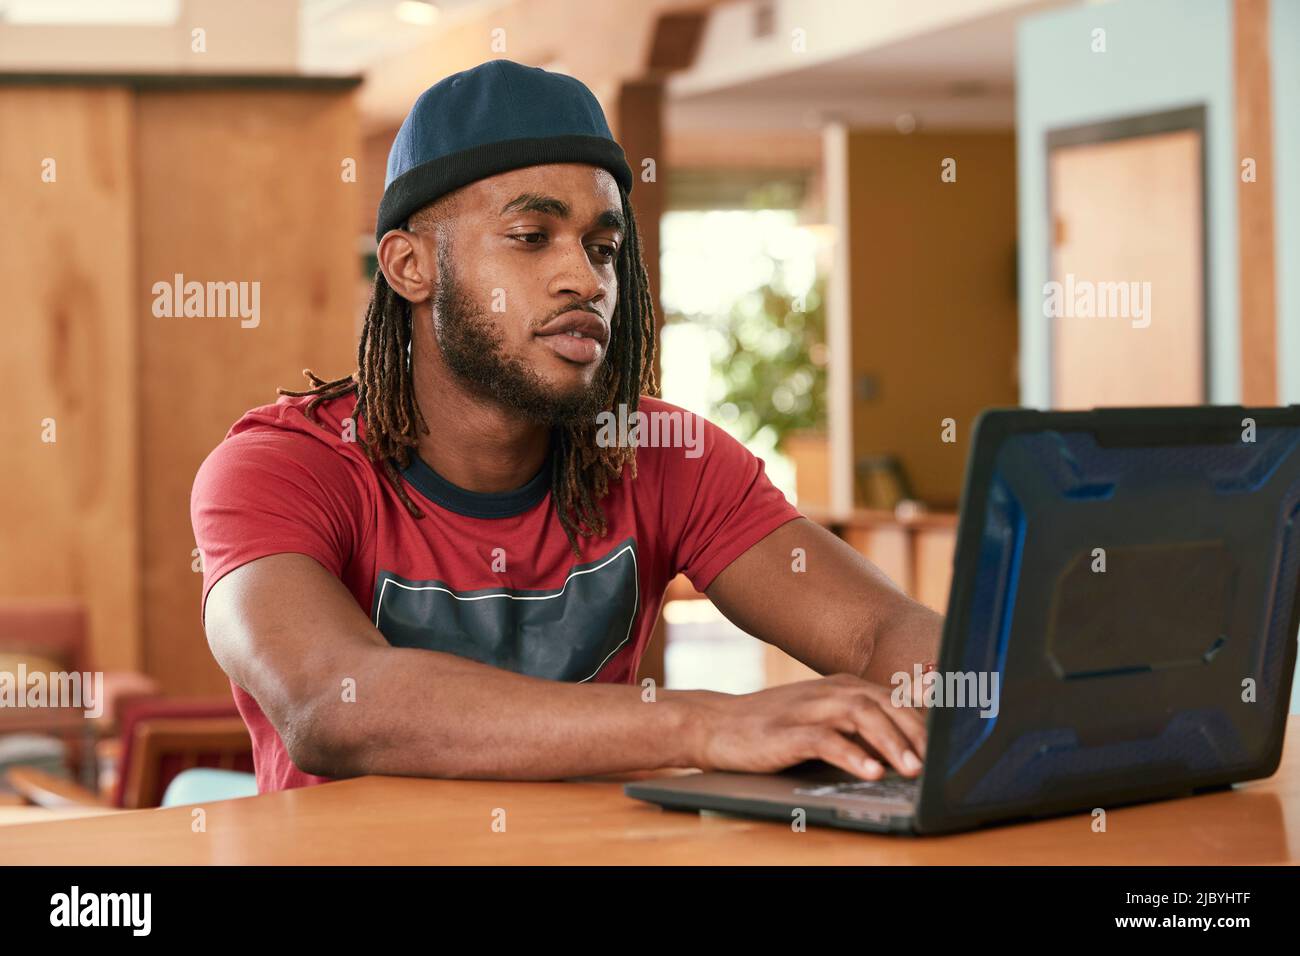 Ritratto di giovane uomo etnico con maglietta rossa e cappello a maglia , seduto al bar in cucina del centro loft con computer portatile Foto Stock